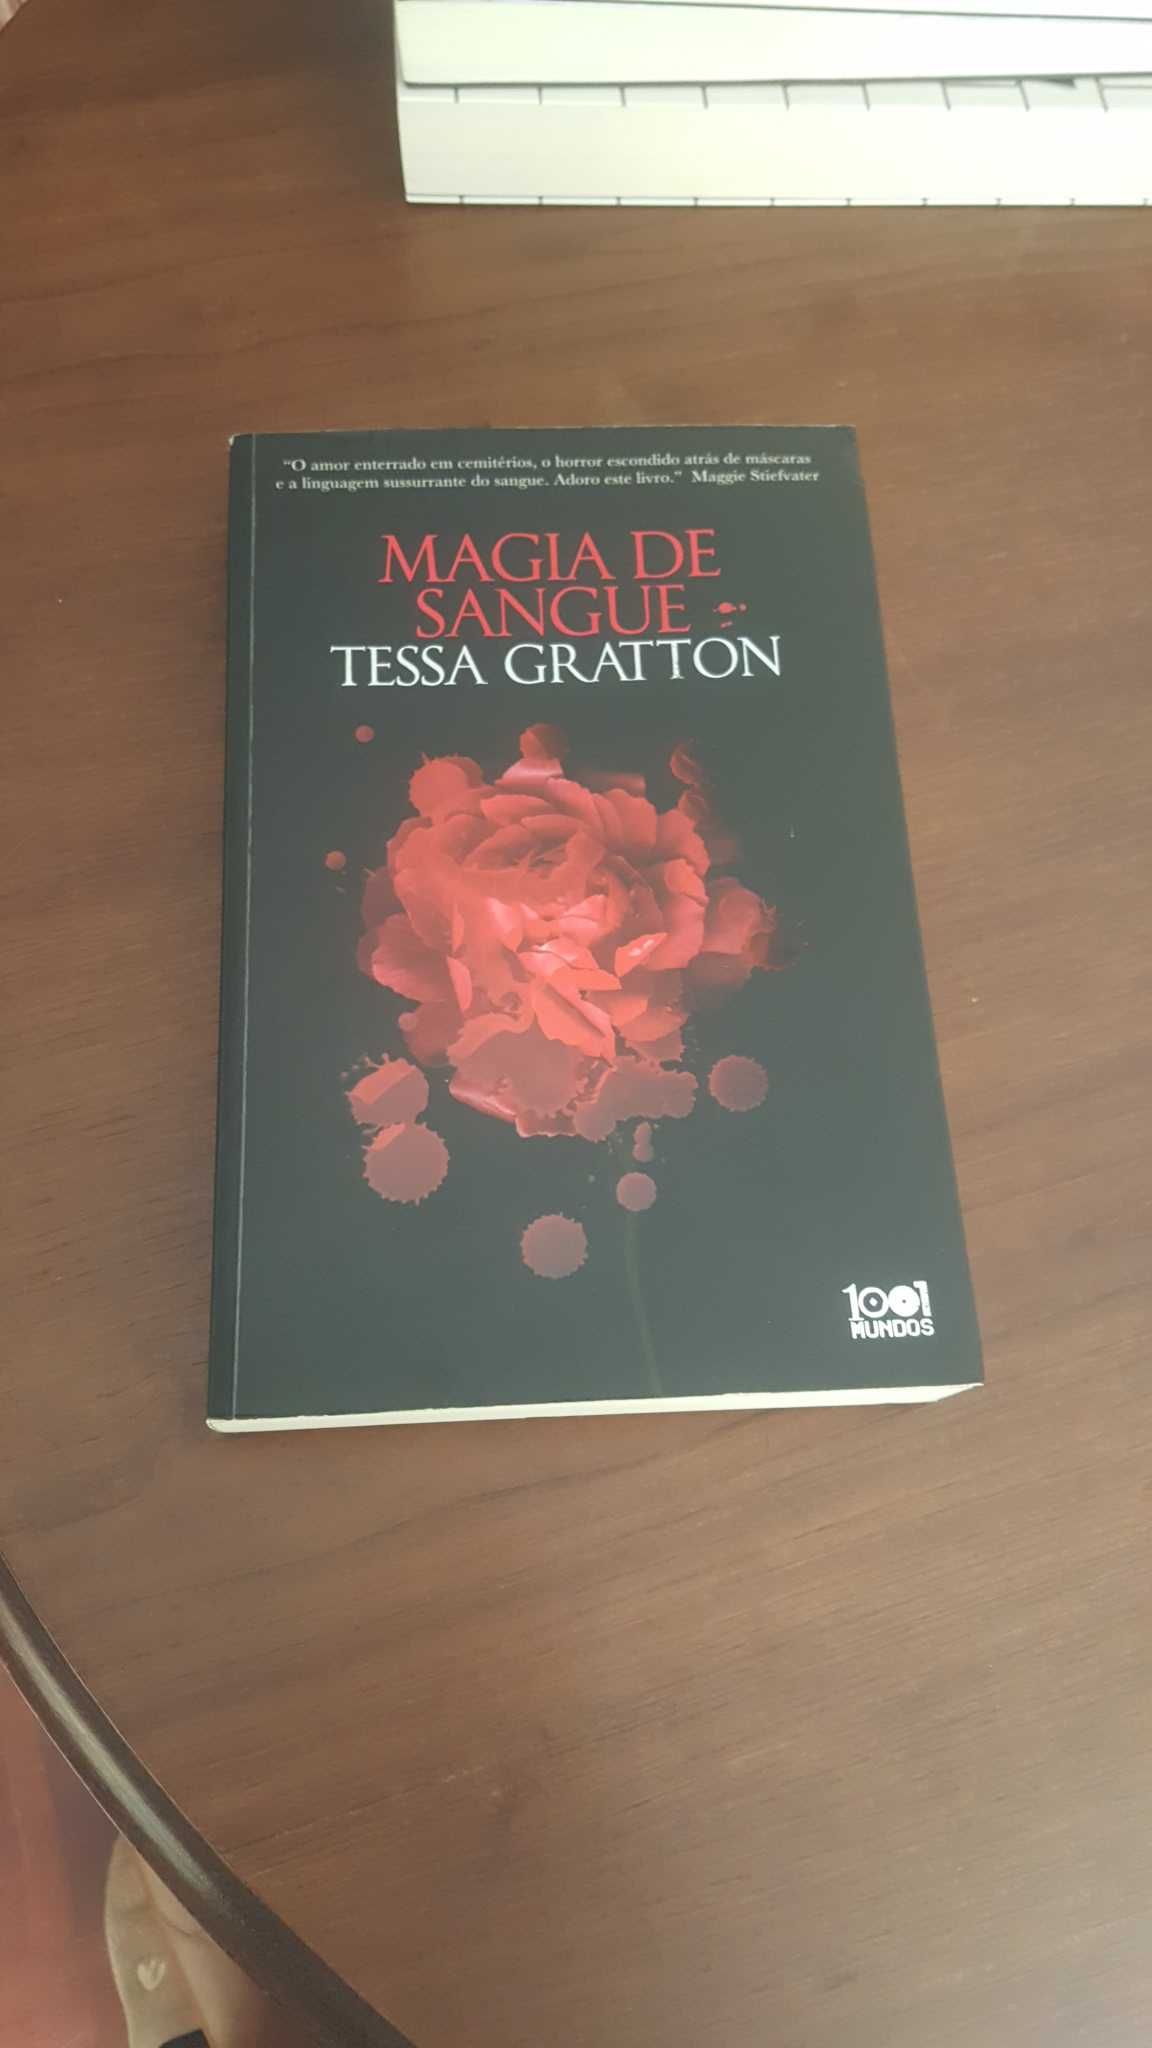 Livro "Magia de Sangue" de Tessa Gratton